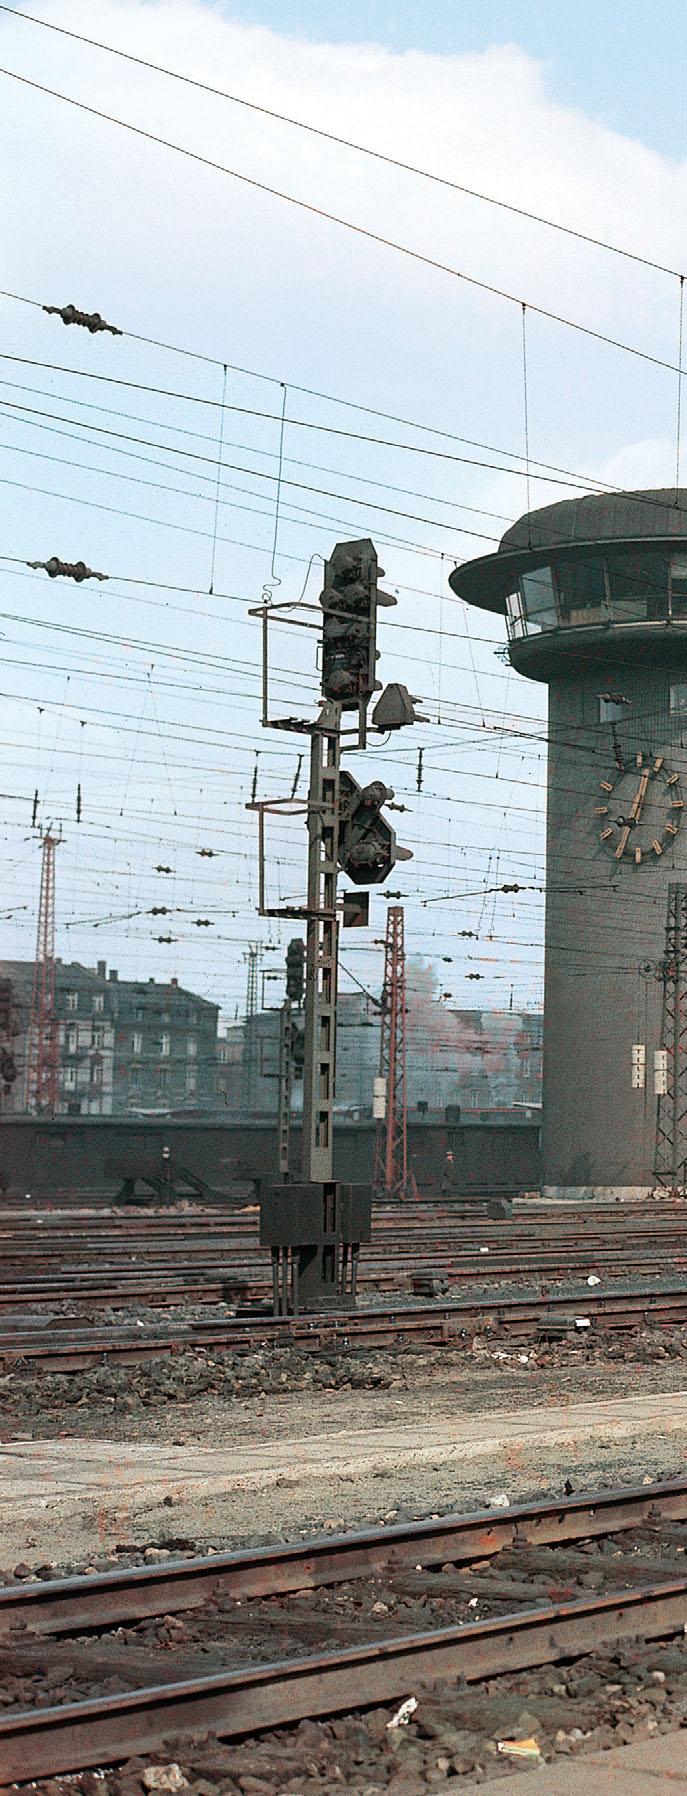 GALERIE Stellwerk Fpf Das nach zweieinhalbjähriger Bauzeit im August 1957 in Betrieb genommene Drucktastenstellwerk im Frankfurter Hauptbahnhof war damals das größte Stellwerk Europas.